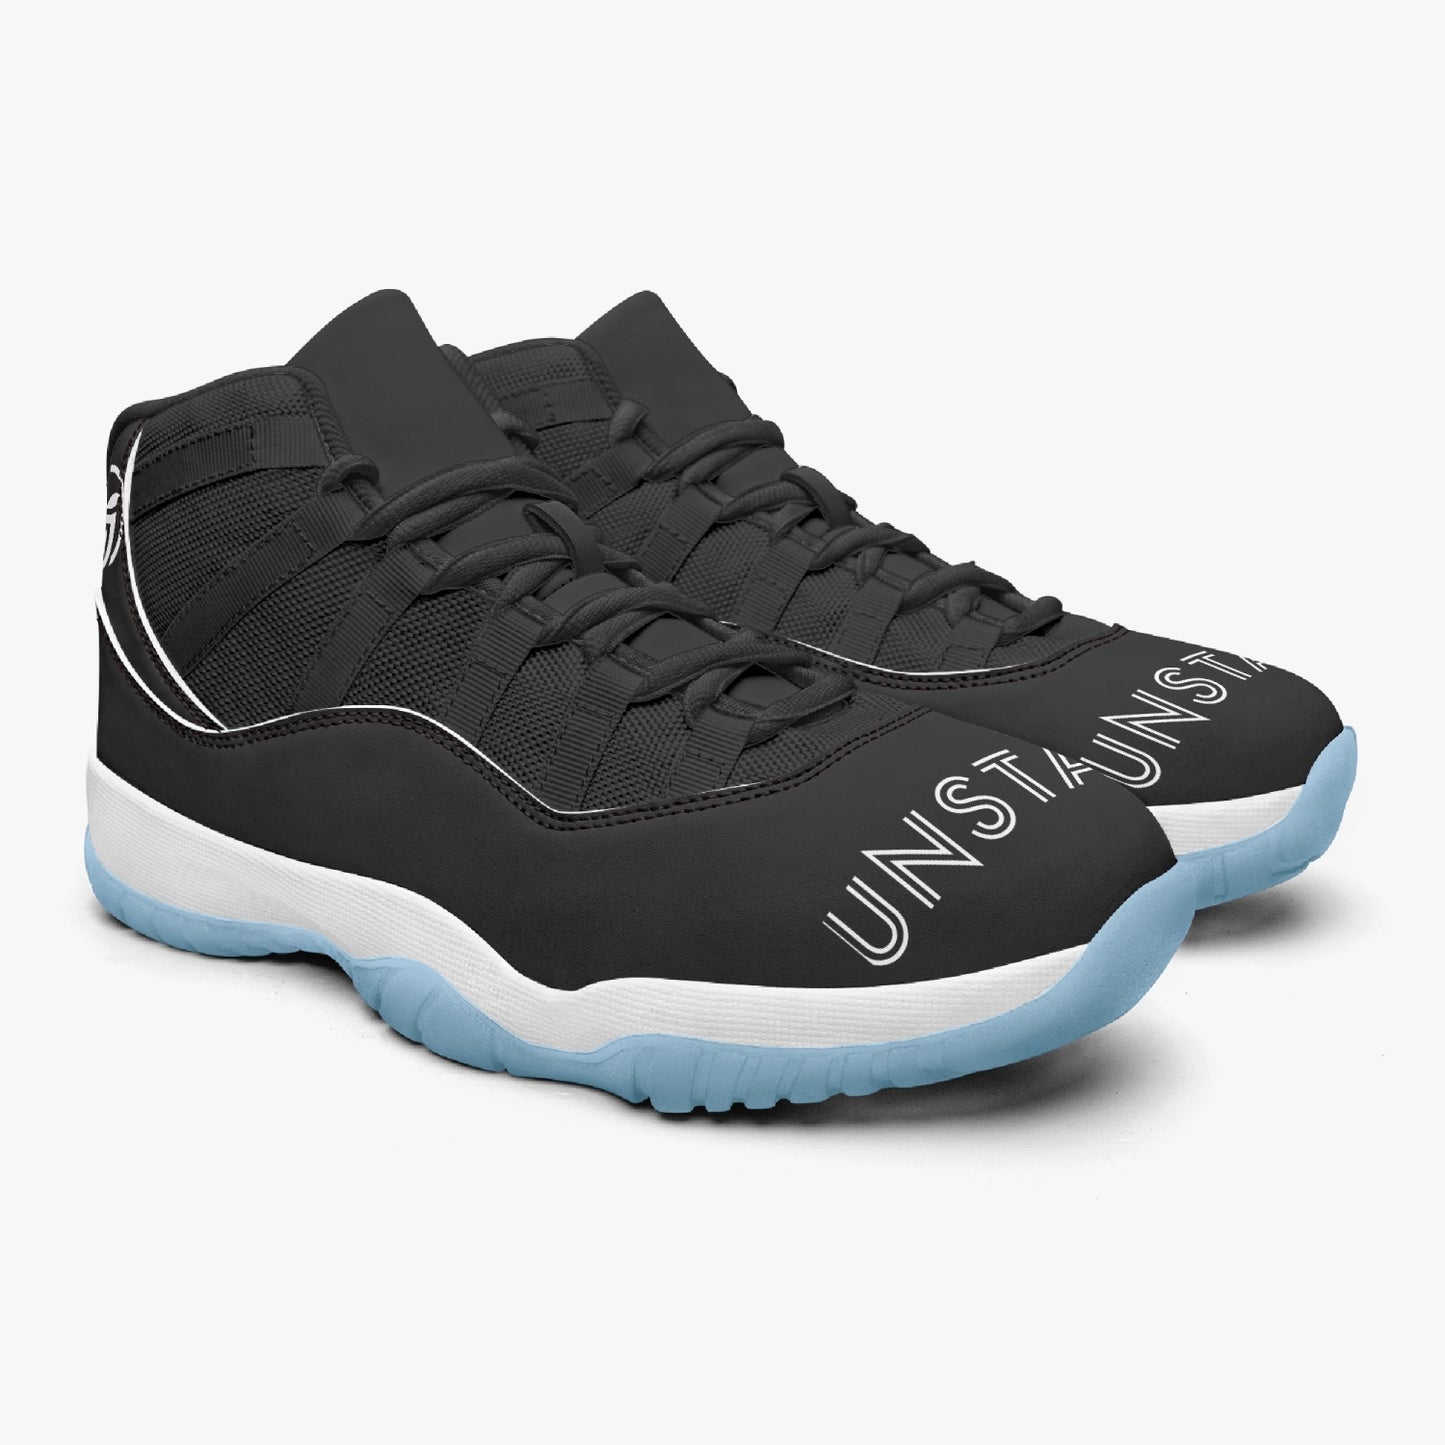 Unstax Blaks Basketball Sneakers -Blue Sole